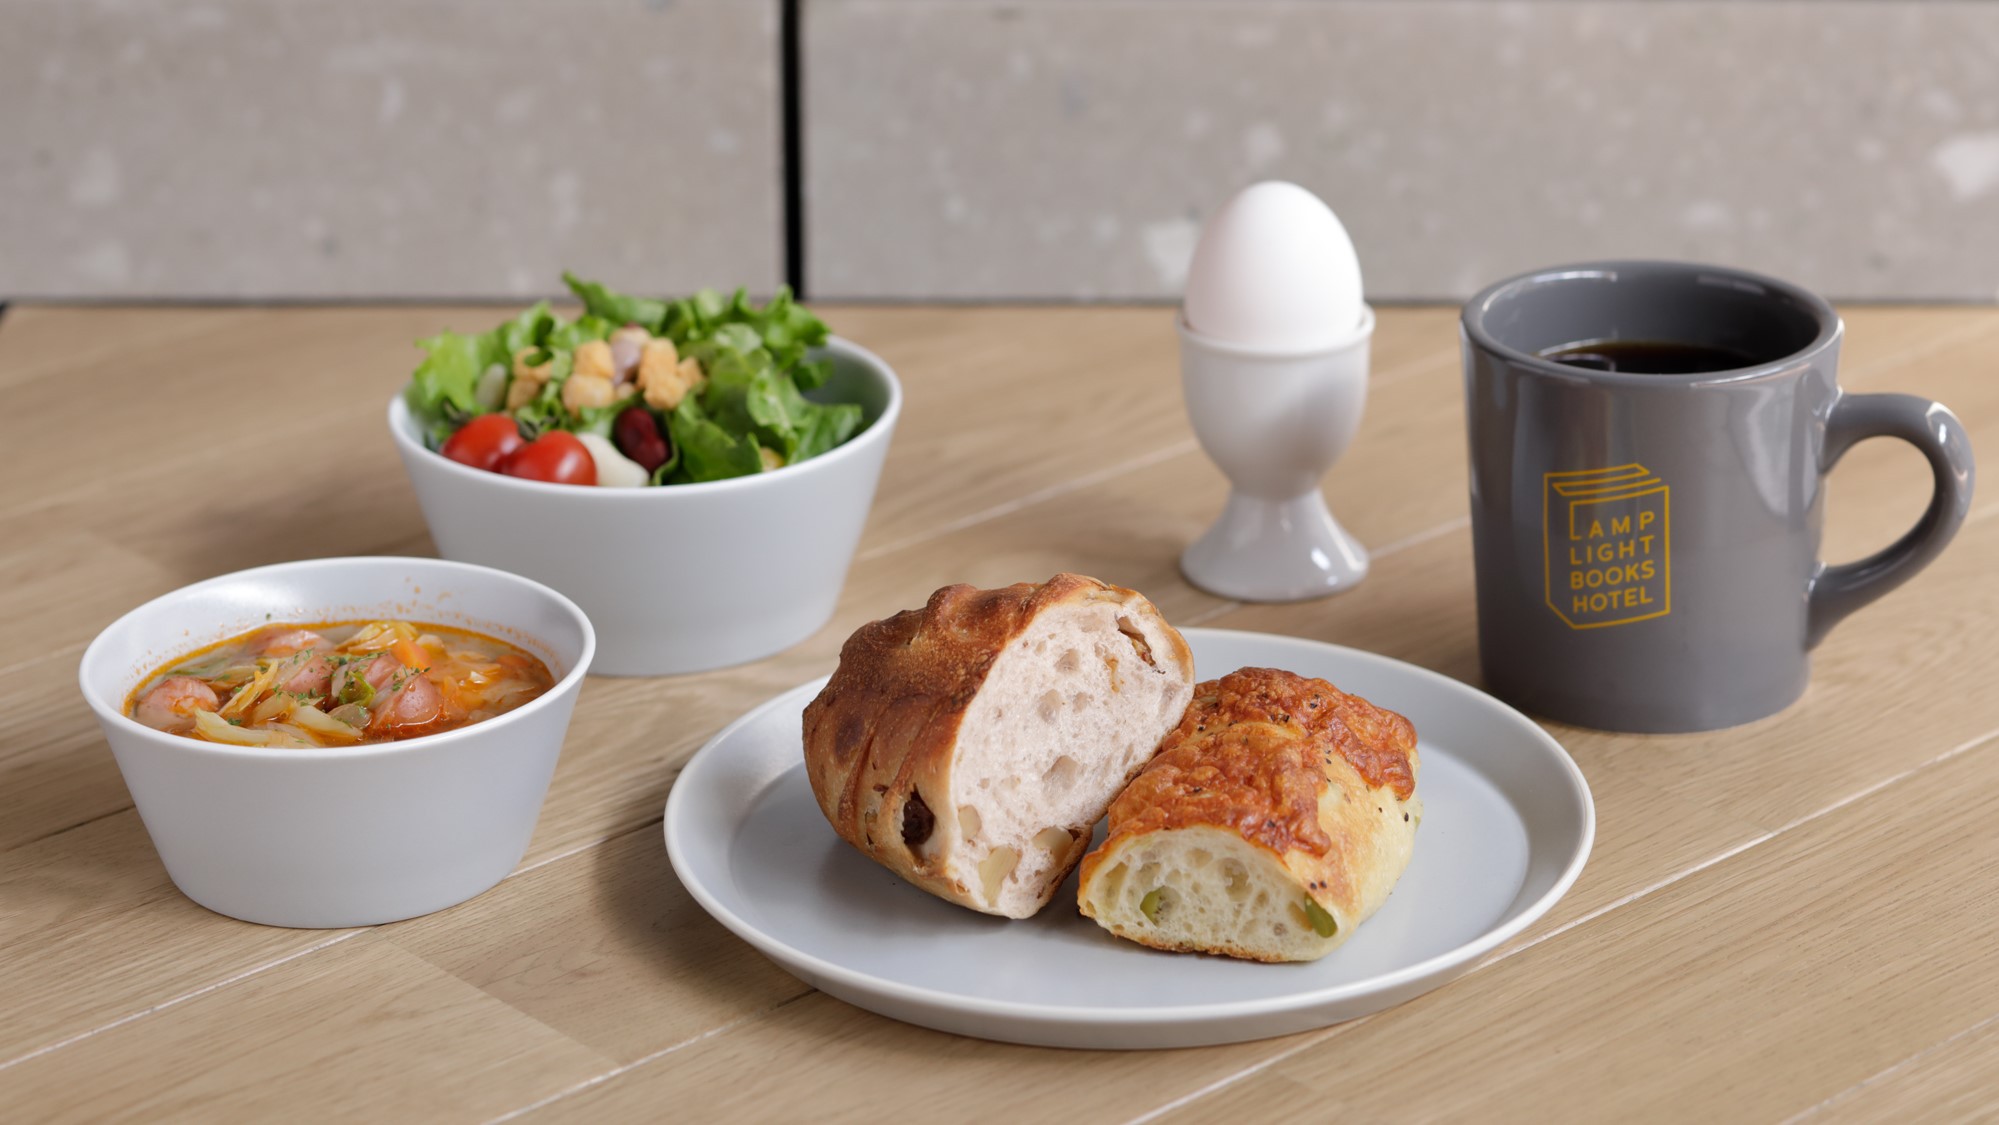 【朝食】 パン、スープ、サラダ、半熟卵、ドリンクのセット